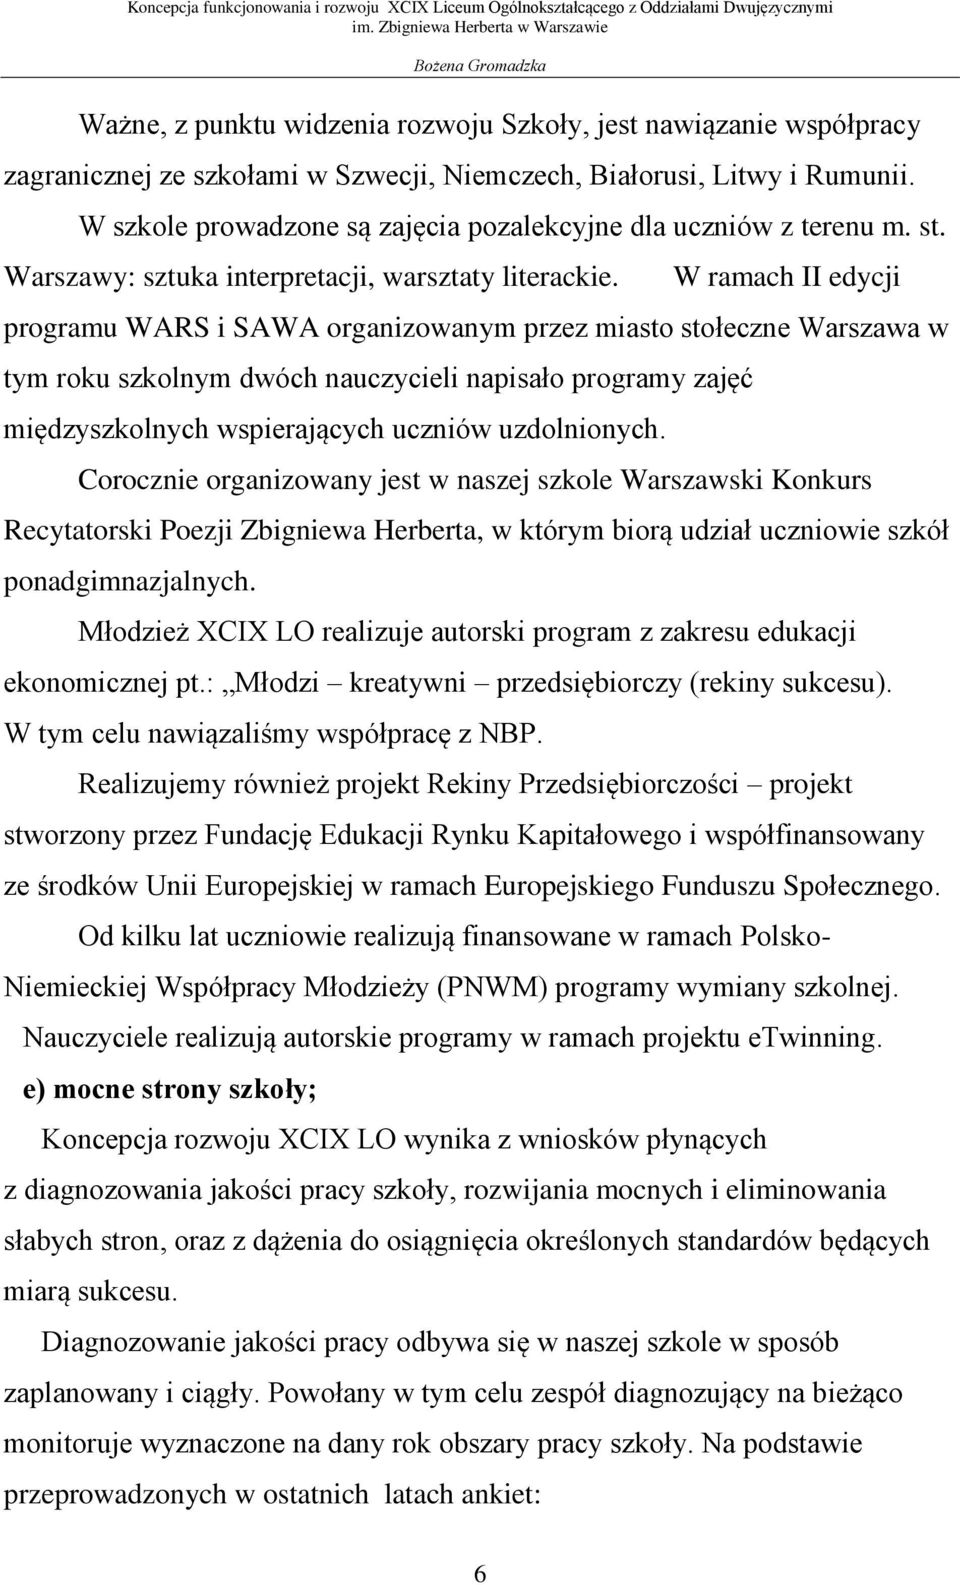 W ramach II edycji programu WARS i SAWA organizowanym przez miasto stołeczne Warszawa w tym roku szkolnym dwóch nauczycieli napisało programy zajęć międzyszkolnych wspierających uczniów uzdolnionych.